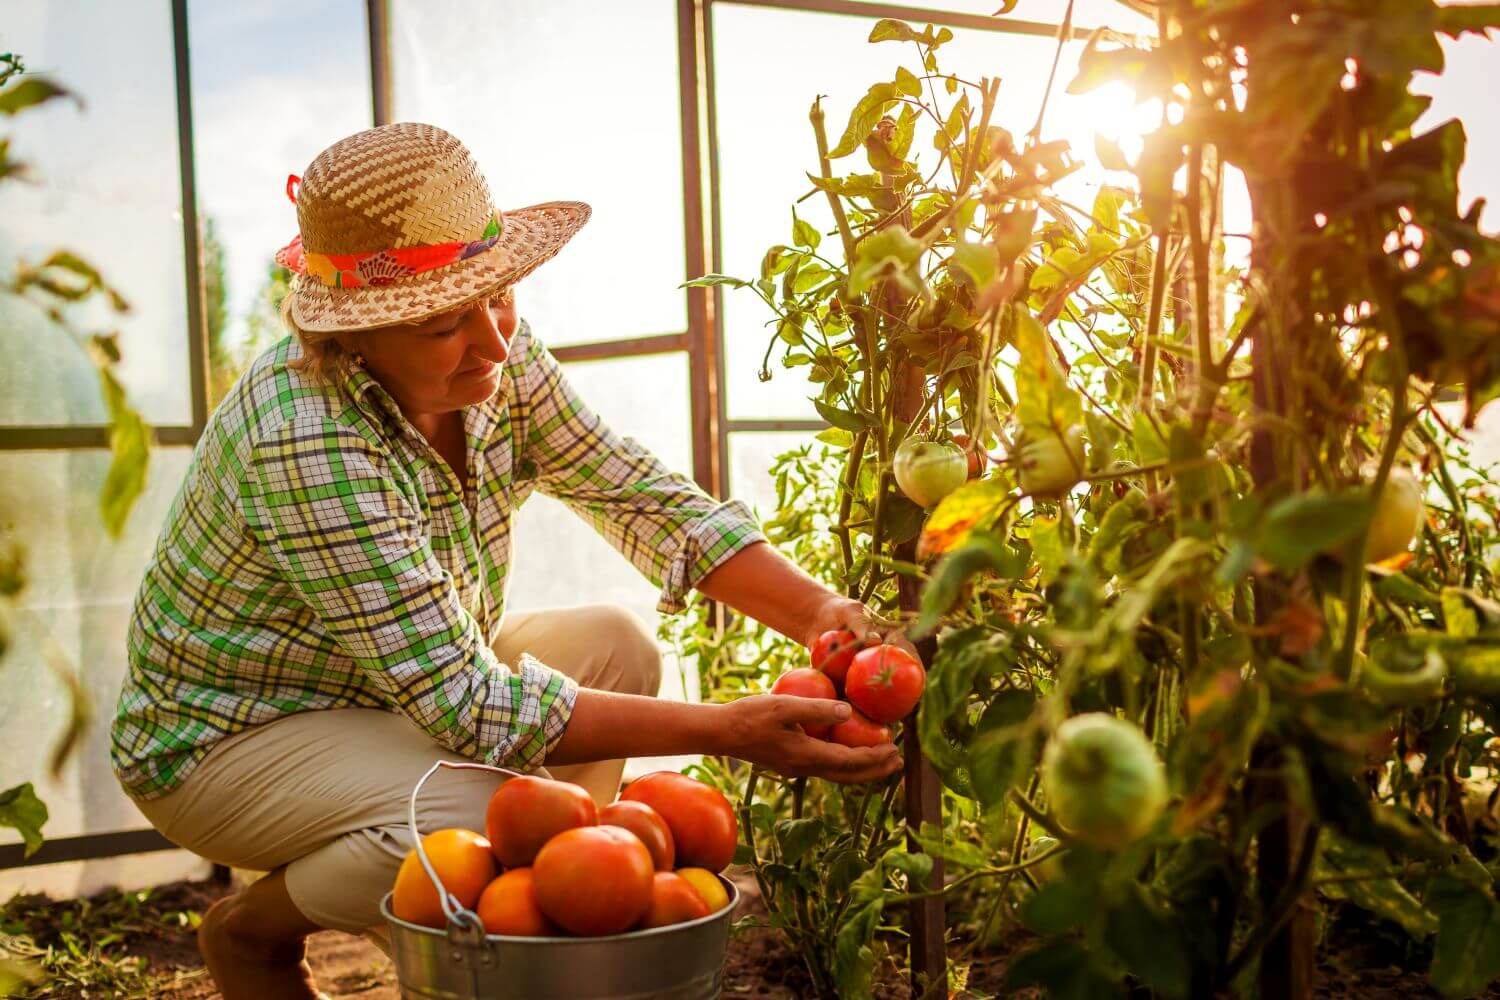 Frau erntet Tomaten in Gewächshaus, vor ihr ein Kübel voll mit roten Tomaten, im Hintergrund sieht man die Sonne ins Gewächshaus scheinen